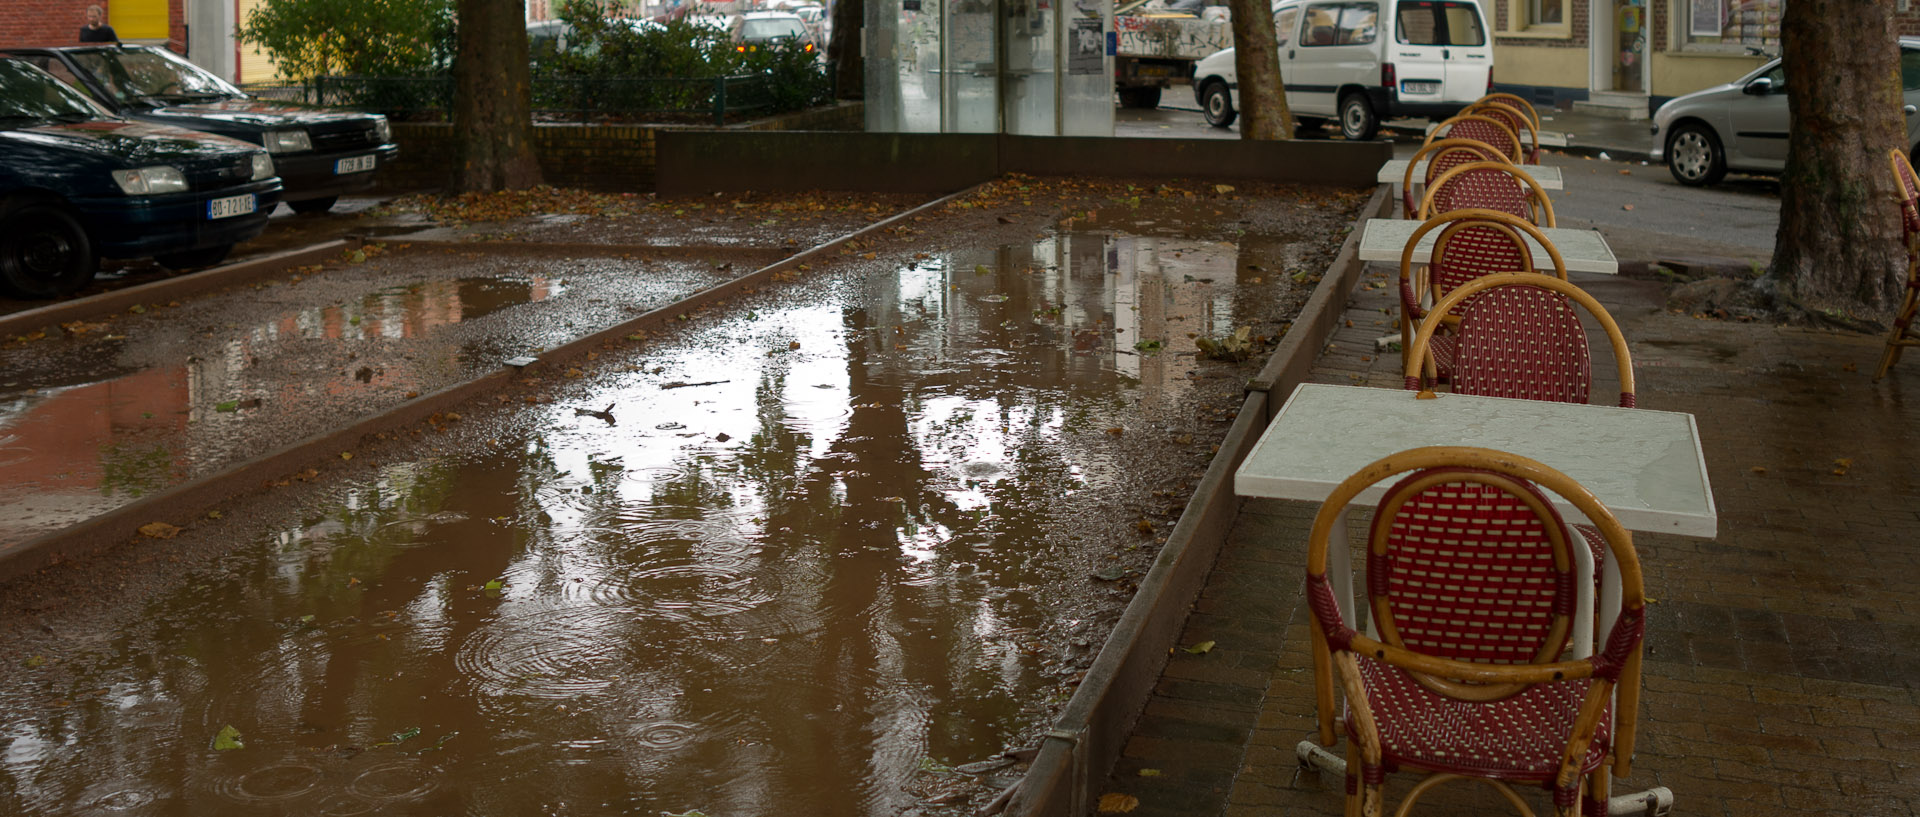 La place Casquette sous la pluie, à Lille.